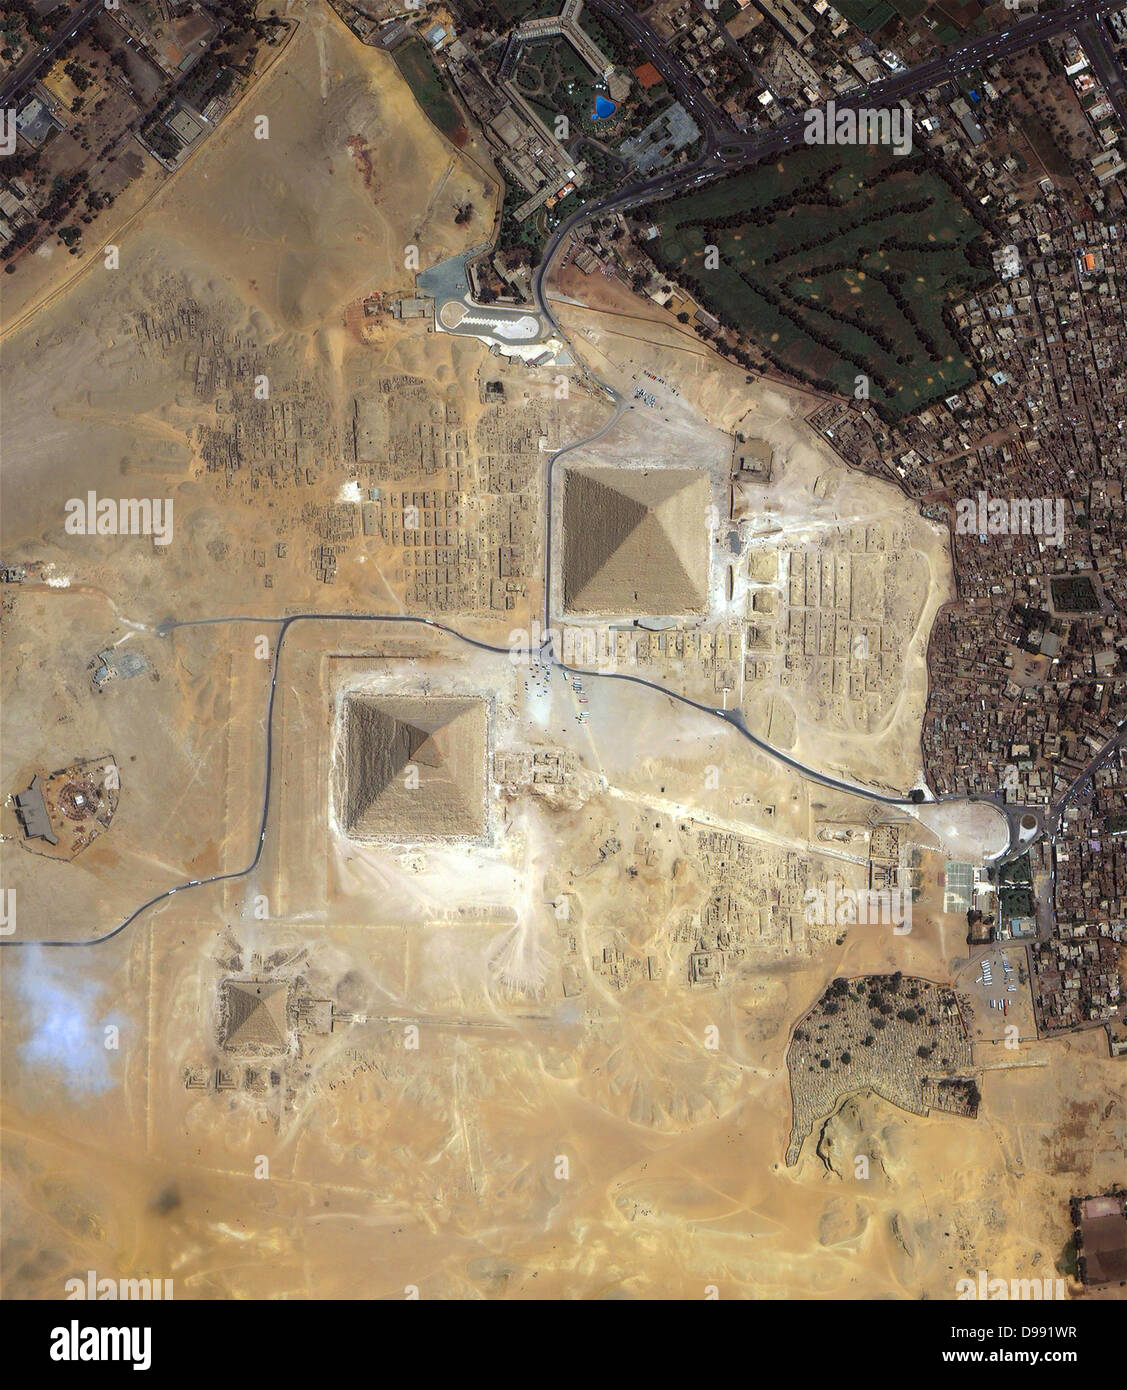 Vista satellitare delle piramidi di Giza in Egitto. Il credito della NASA. Foto Stock